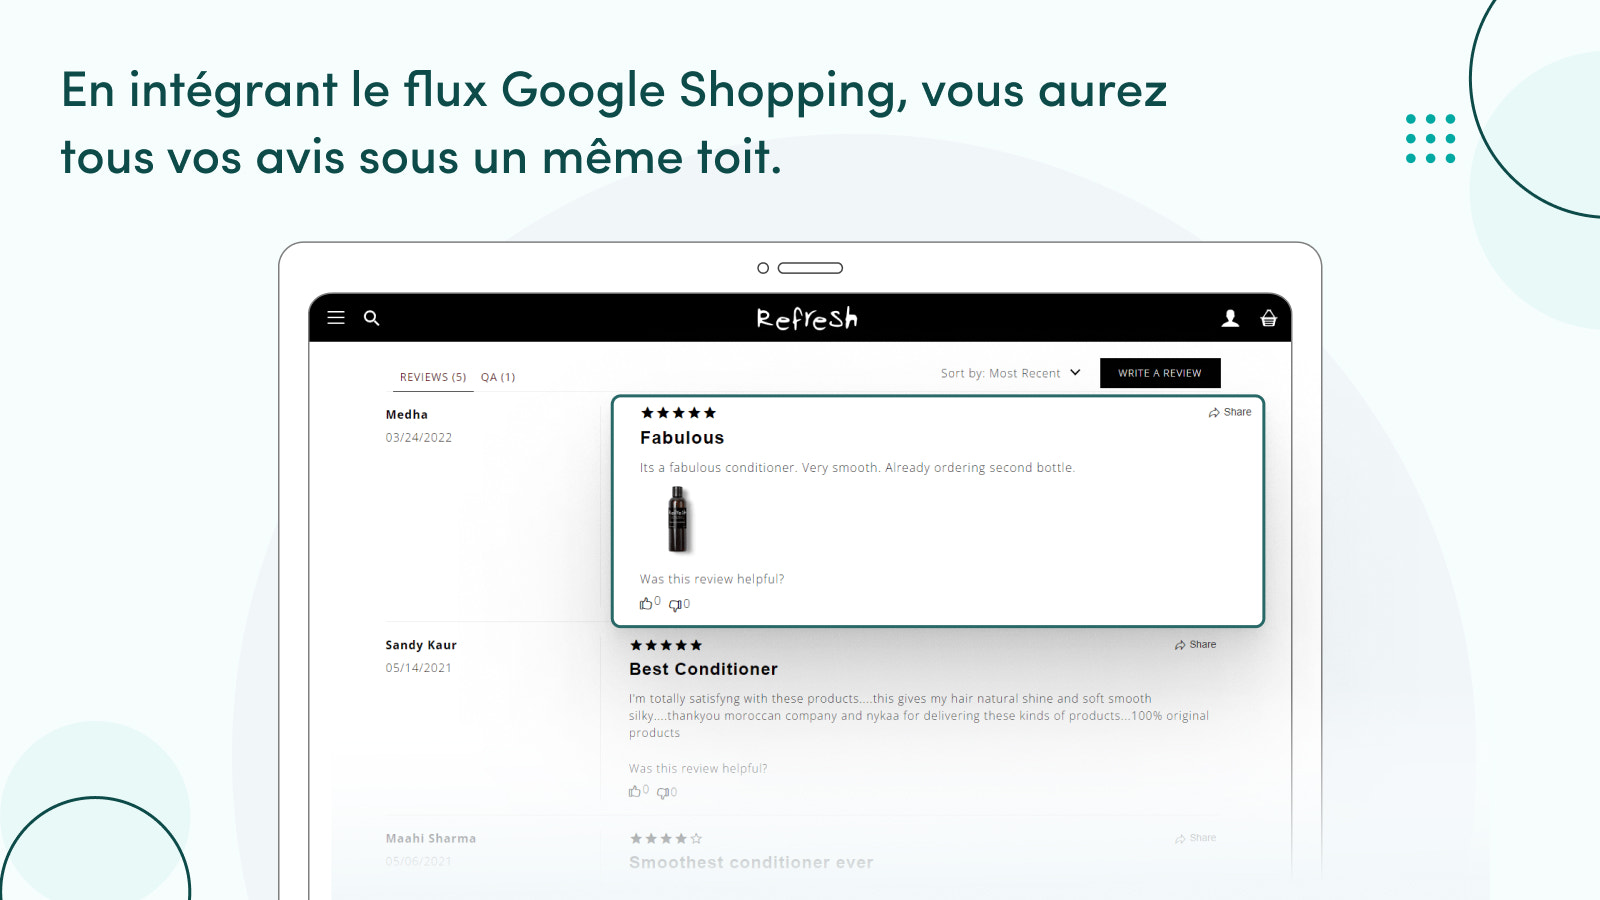 Flux Google Shopping rassemble tous vos avis sous un même toit.